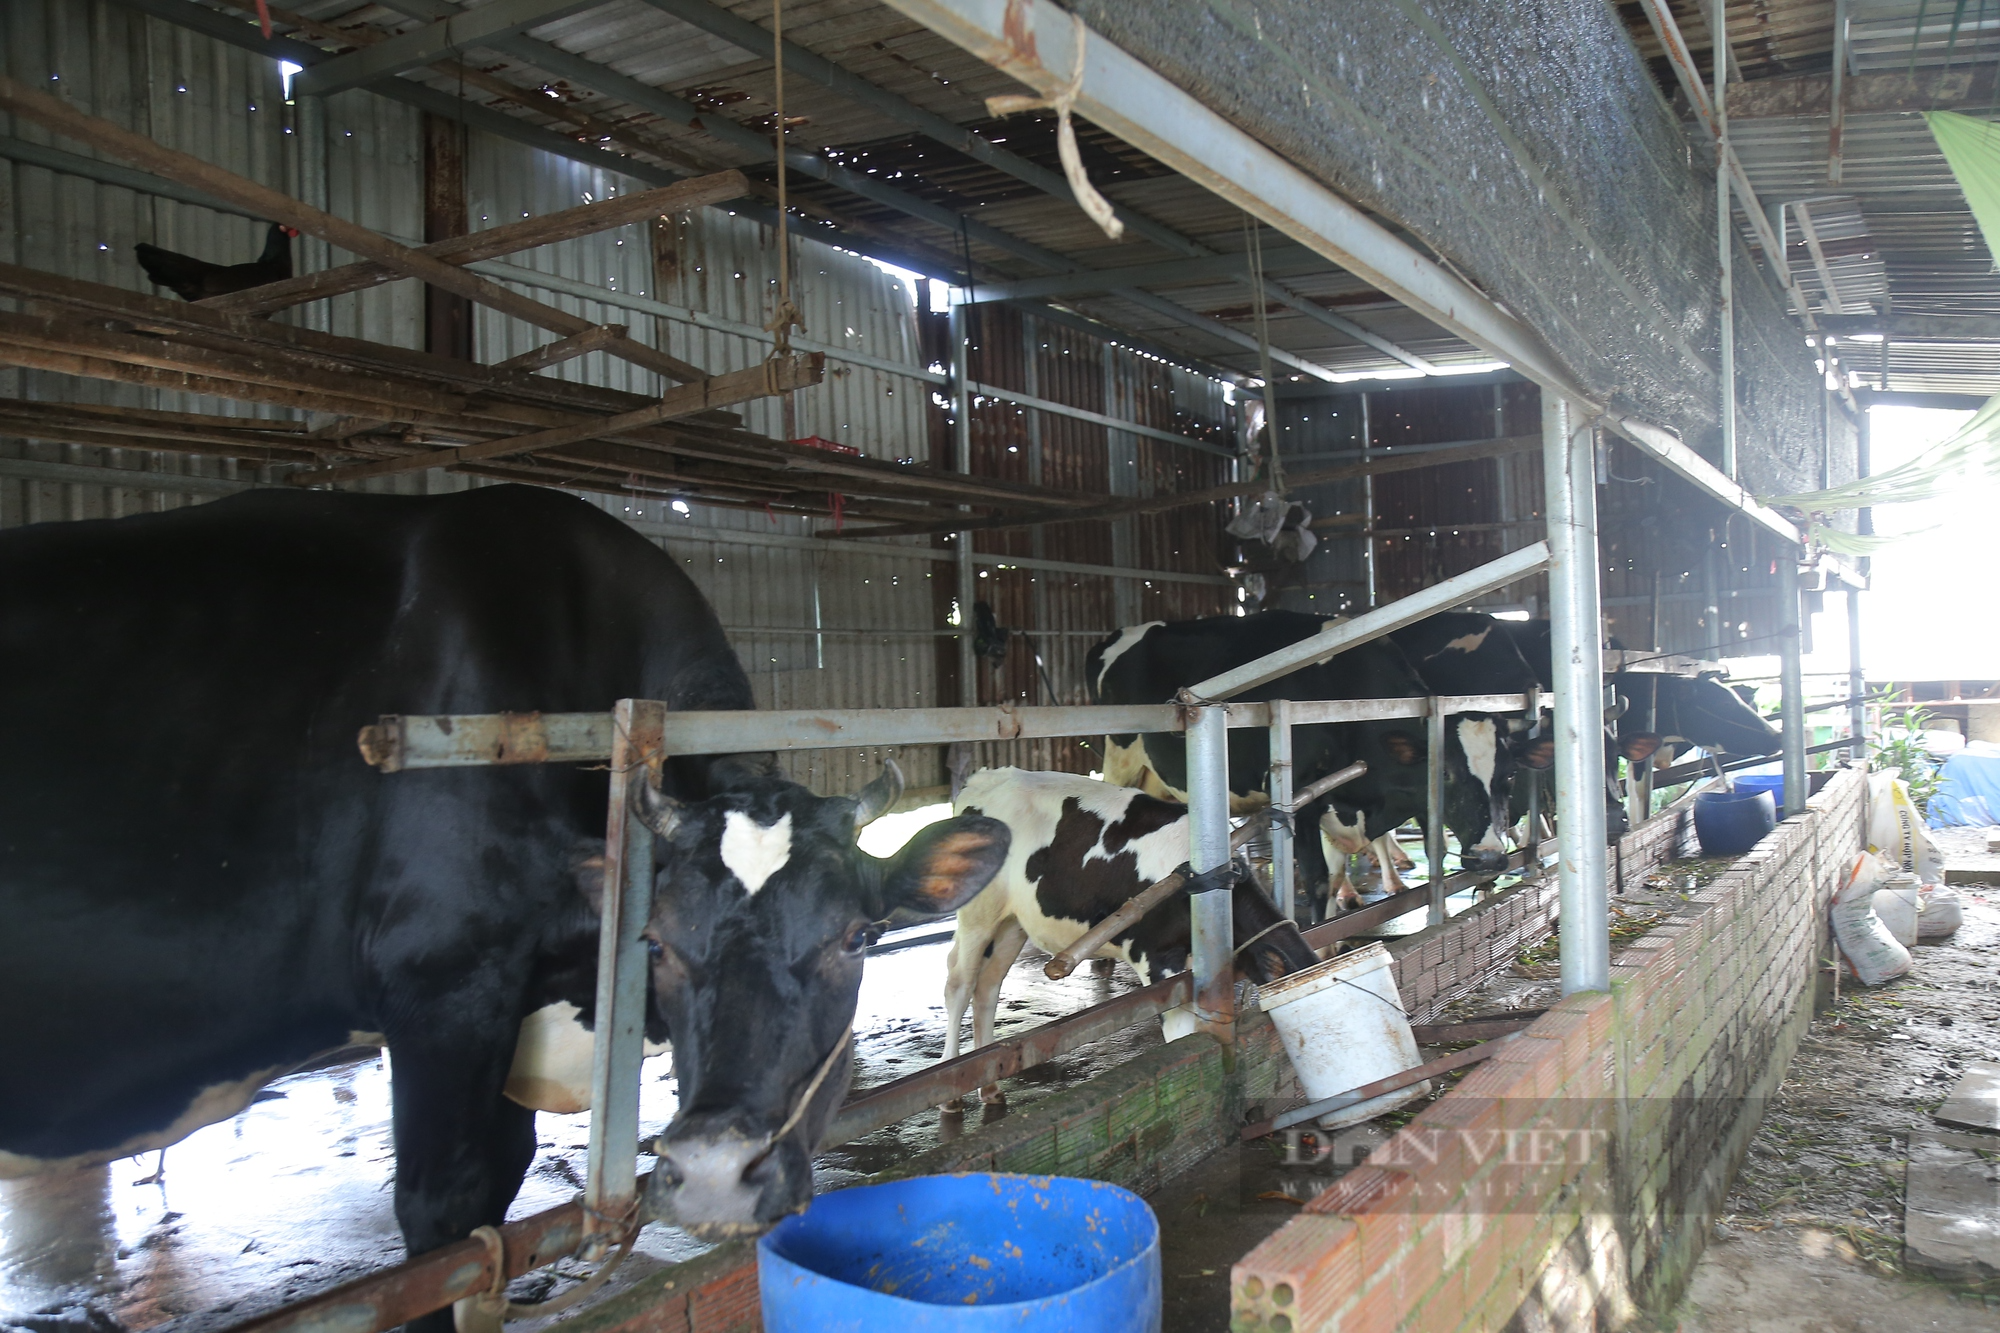 Thức ăn gia súc tăng cao, nông dân TP.HCM bán bò, tính bỏ nghề chăn nuôi - Ảnh 2.